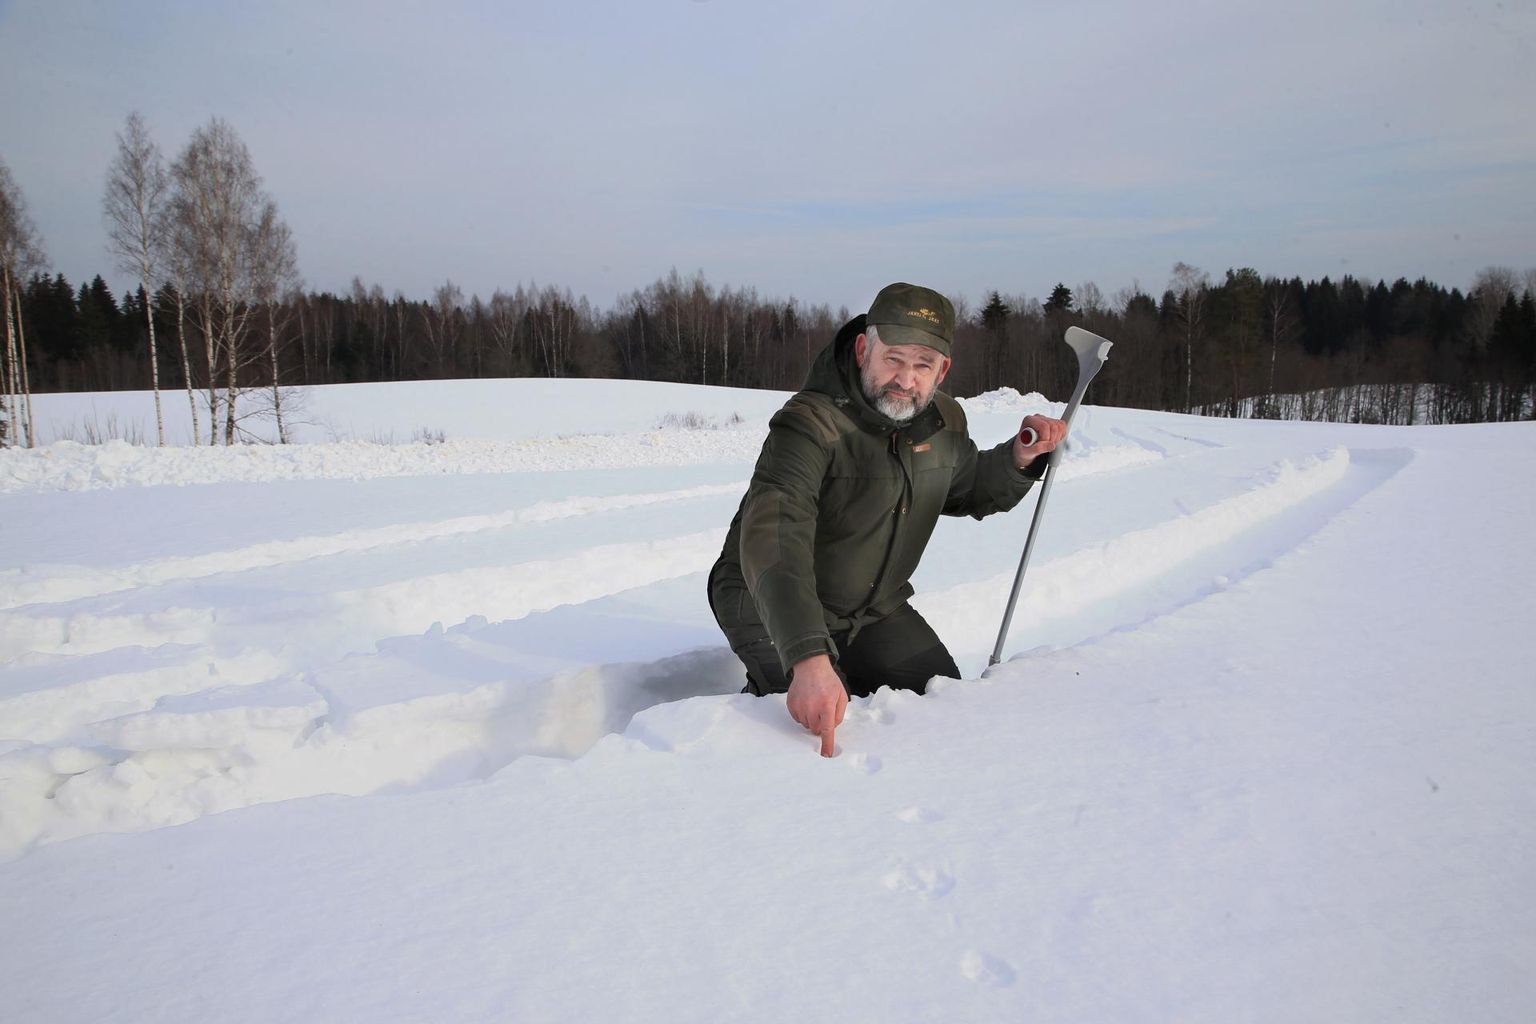 Lumi kannab! Keegi on siit läinud, osutab Haanjas Piipsemäe külas jahimees Juss Torp. Sügisese puusaliigese vahetuse tõttu peab ta siiamaani paksus lumes turvaliseks liikumiseks kasutama karku.